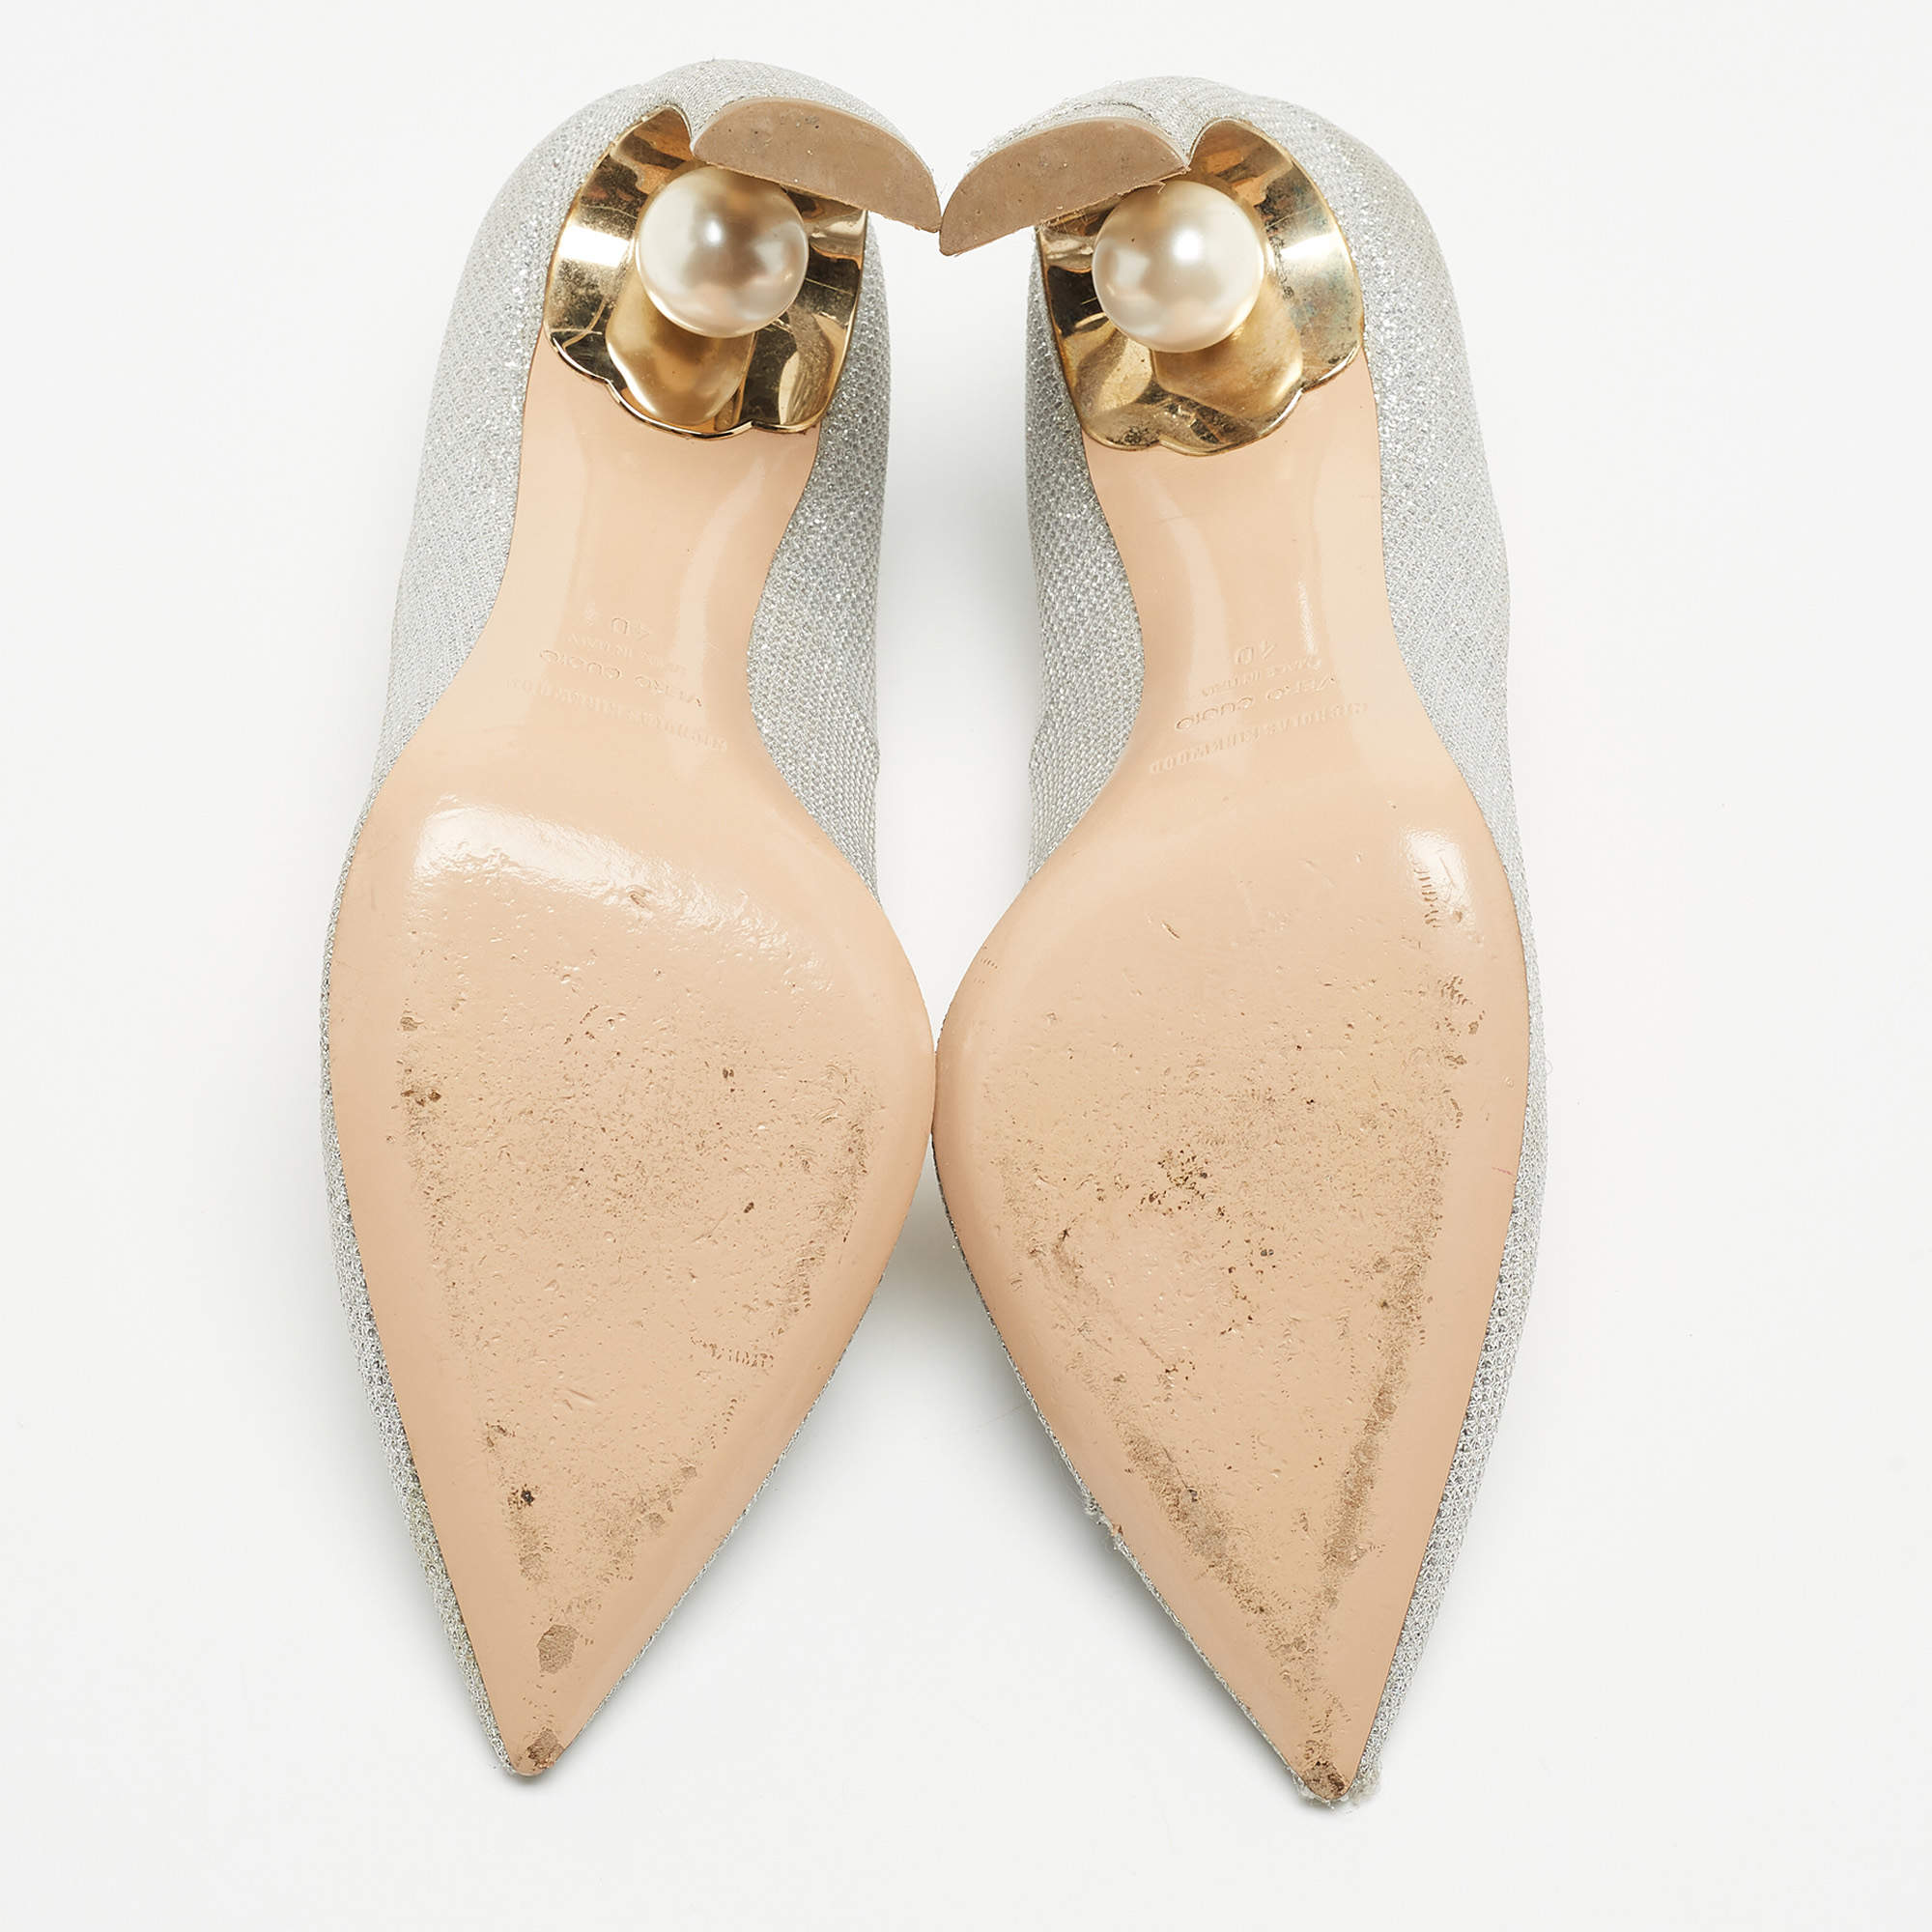 Nicholas Kirkwood pearl-detail pumps > Shoeperwoman